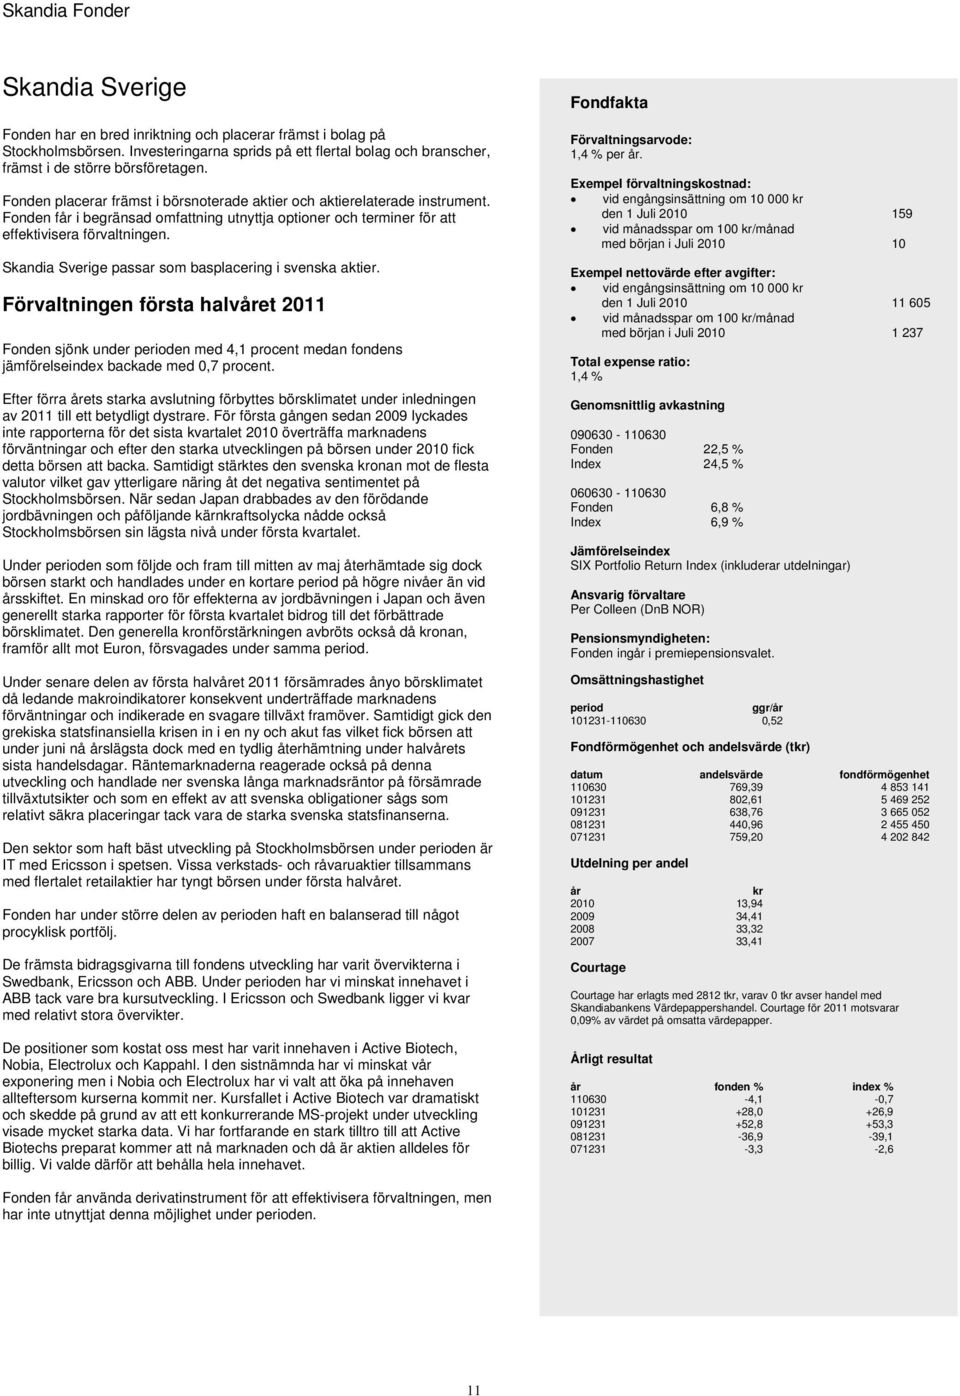 Skandia Sverige passar som basplacering i svenska aktier. Förvaltningen första halvåret 2011 Fonden sjönk under perioden med 4,1 procent medan fondens jämförelseindex backade med 0,7 procent.